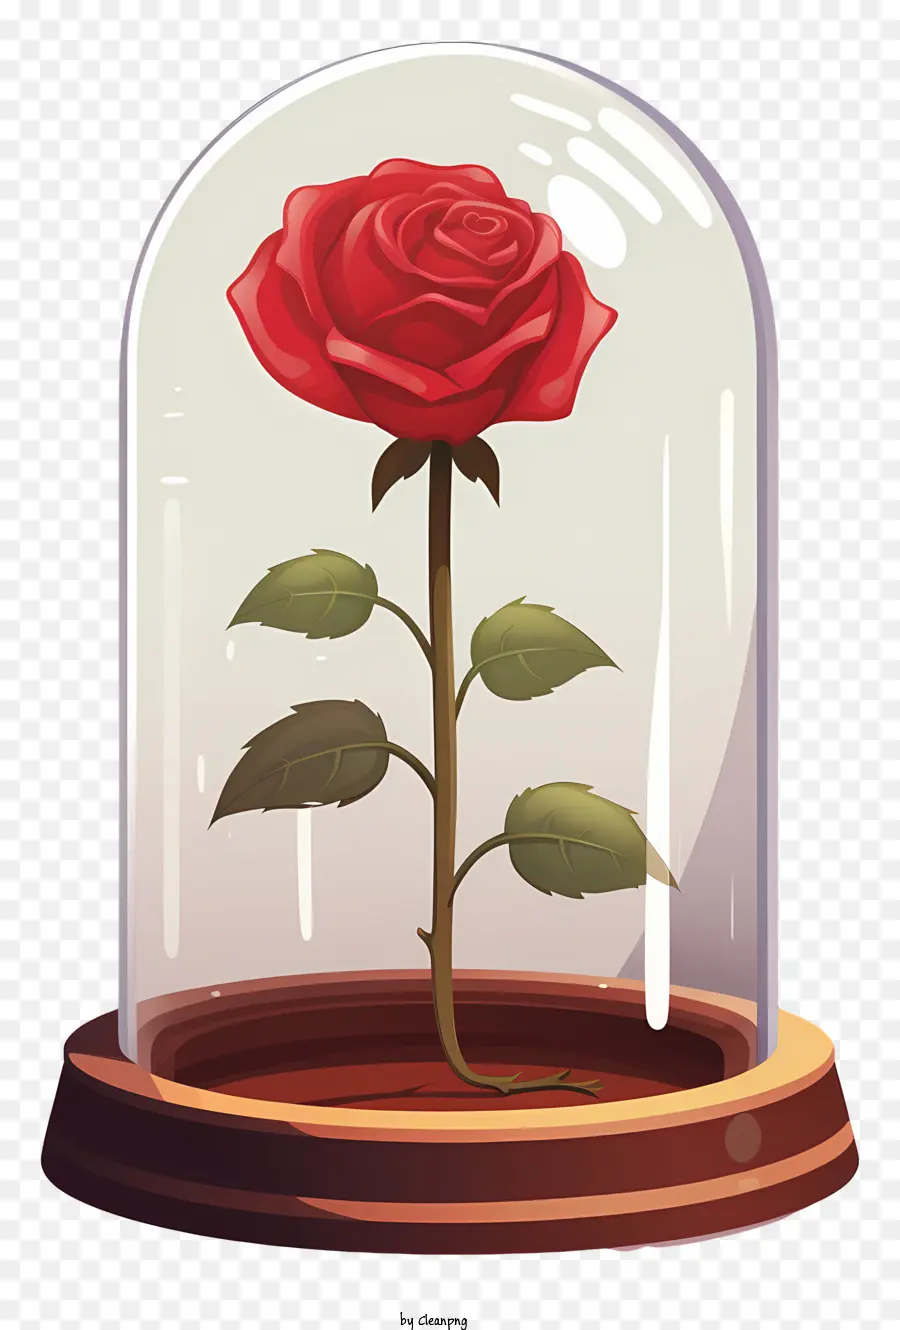 rosa - Rosa rossa in vetro a cupola su sfondo nero